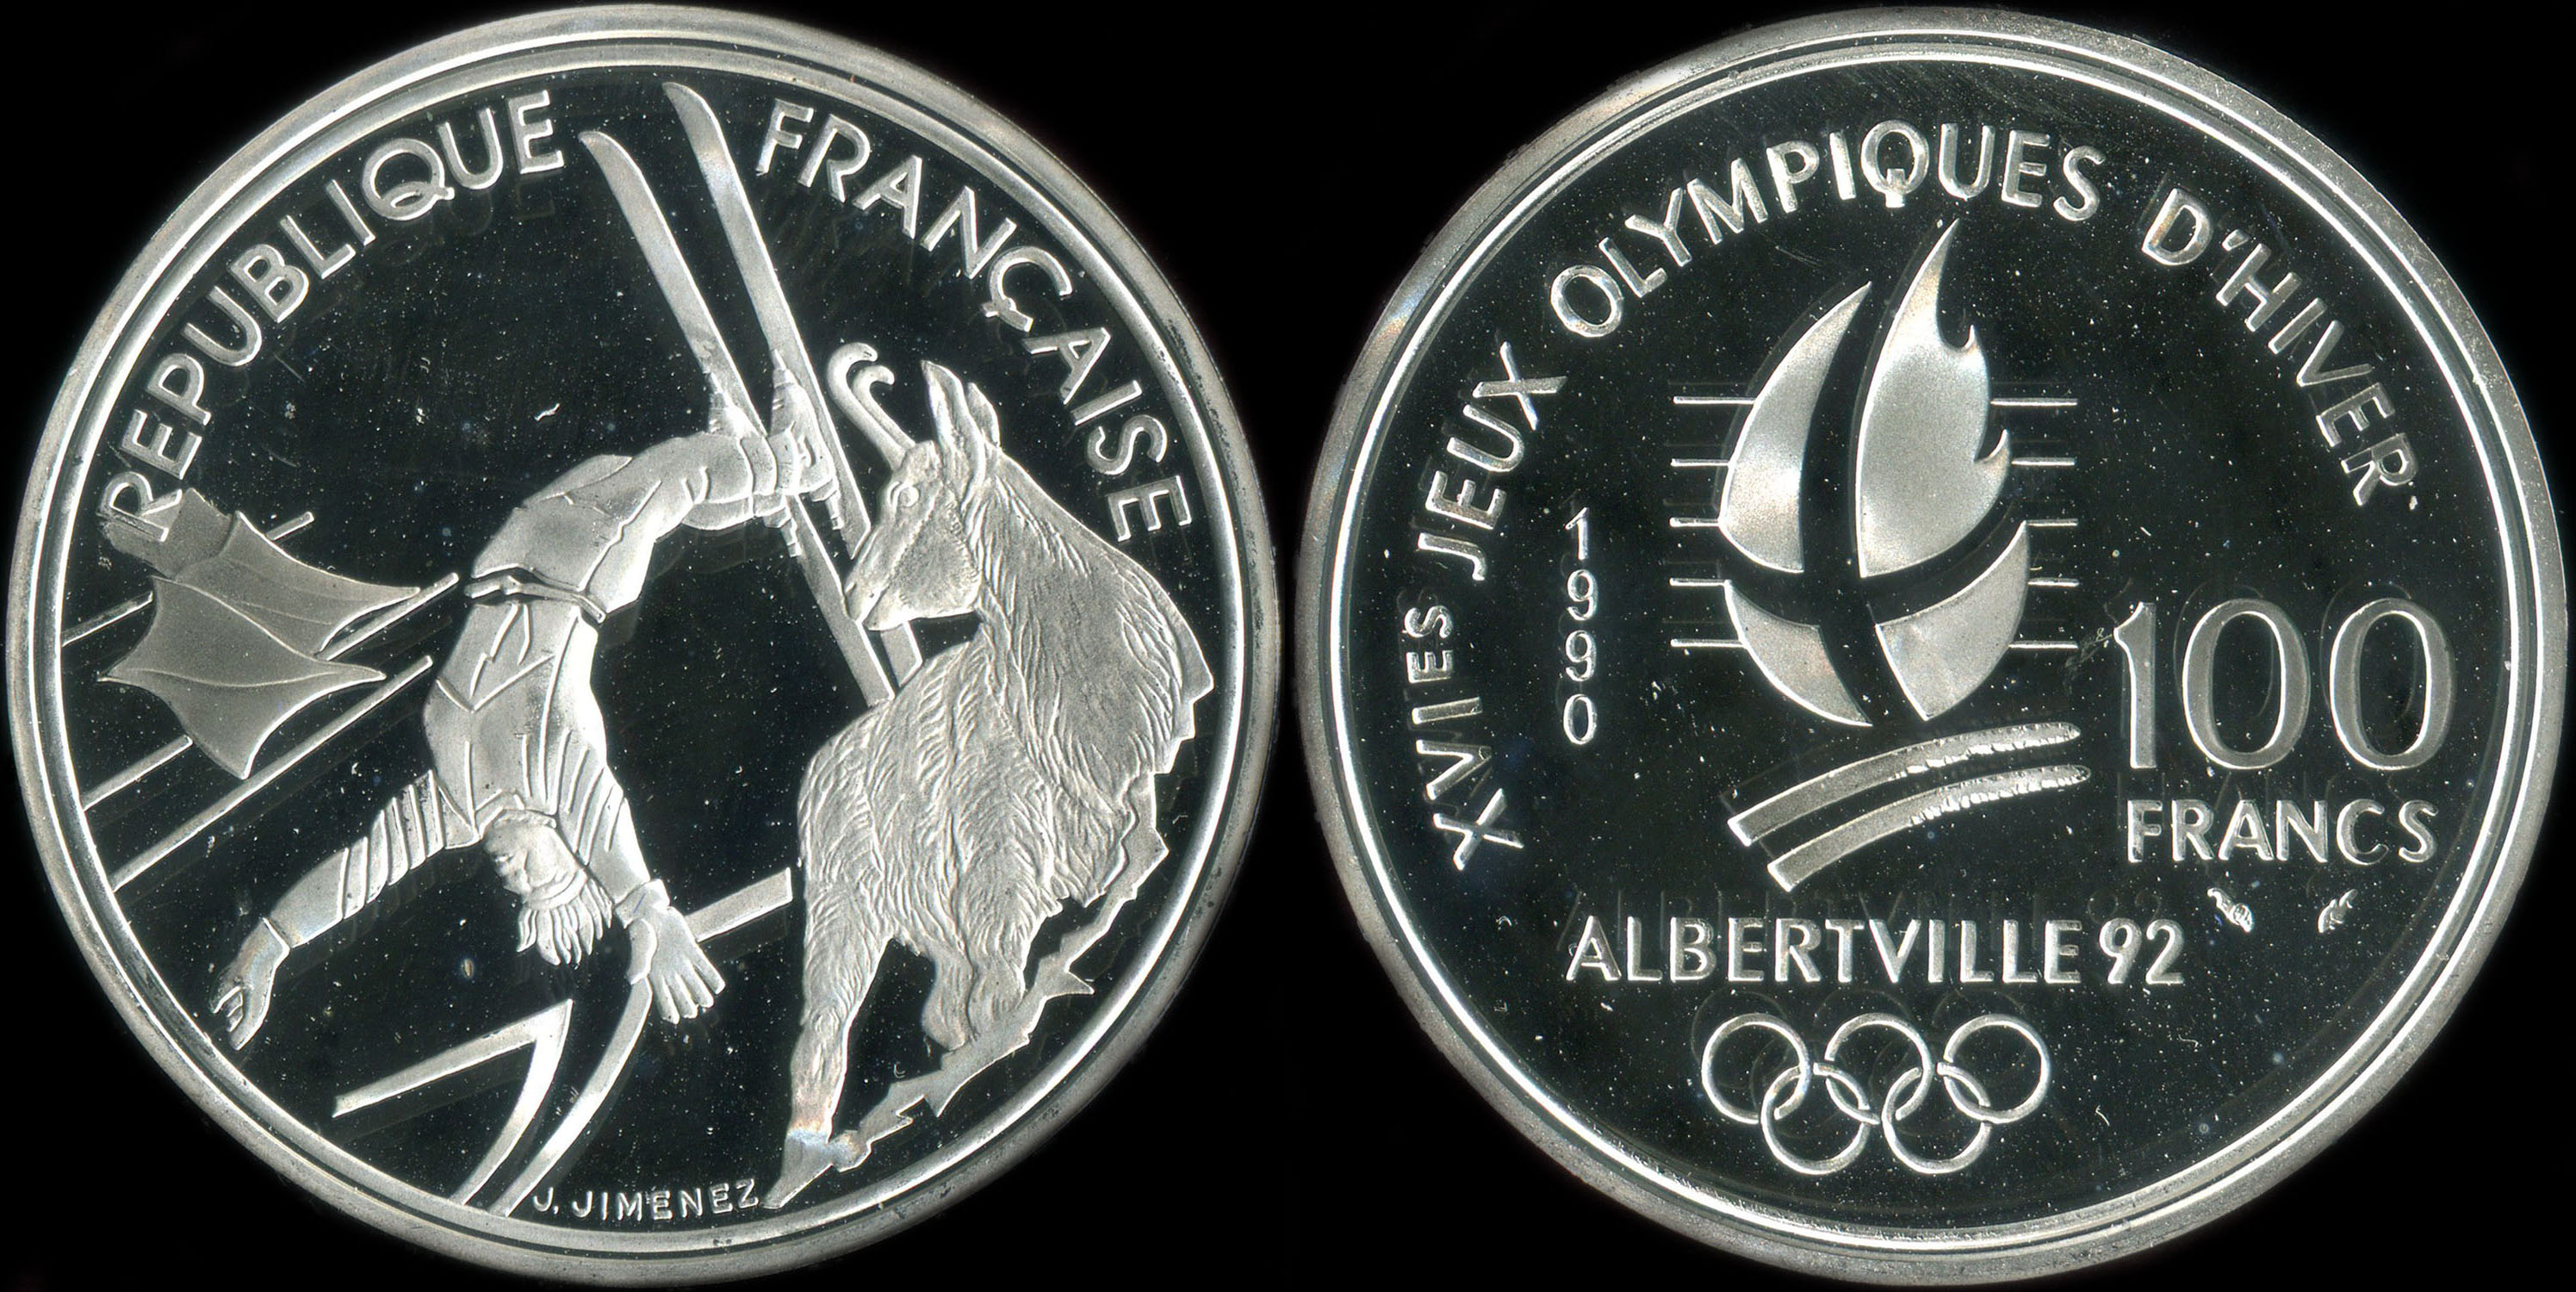 Pice de 100 francs 1990 - XVIes Jeux Olympiques d'Hiver - Albertville 92 - Ski Acrobatique - Chamois